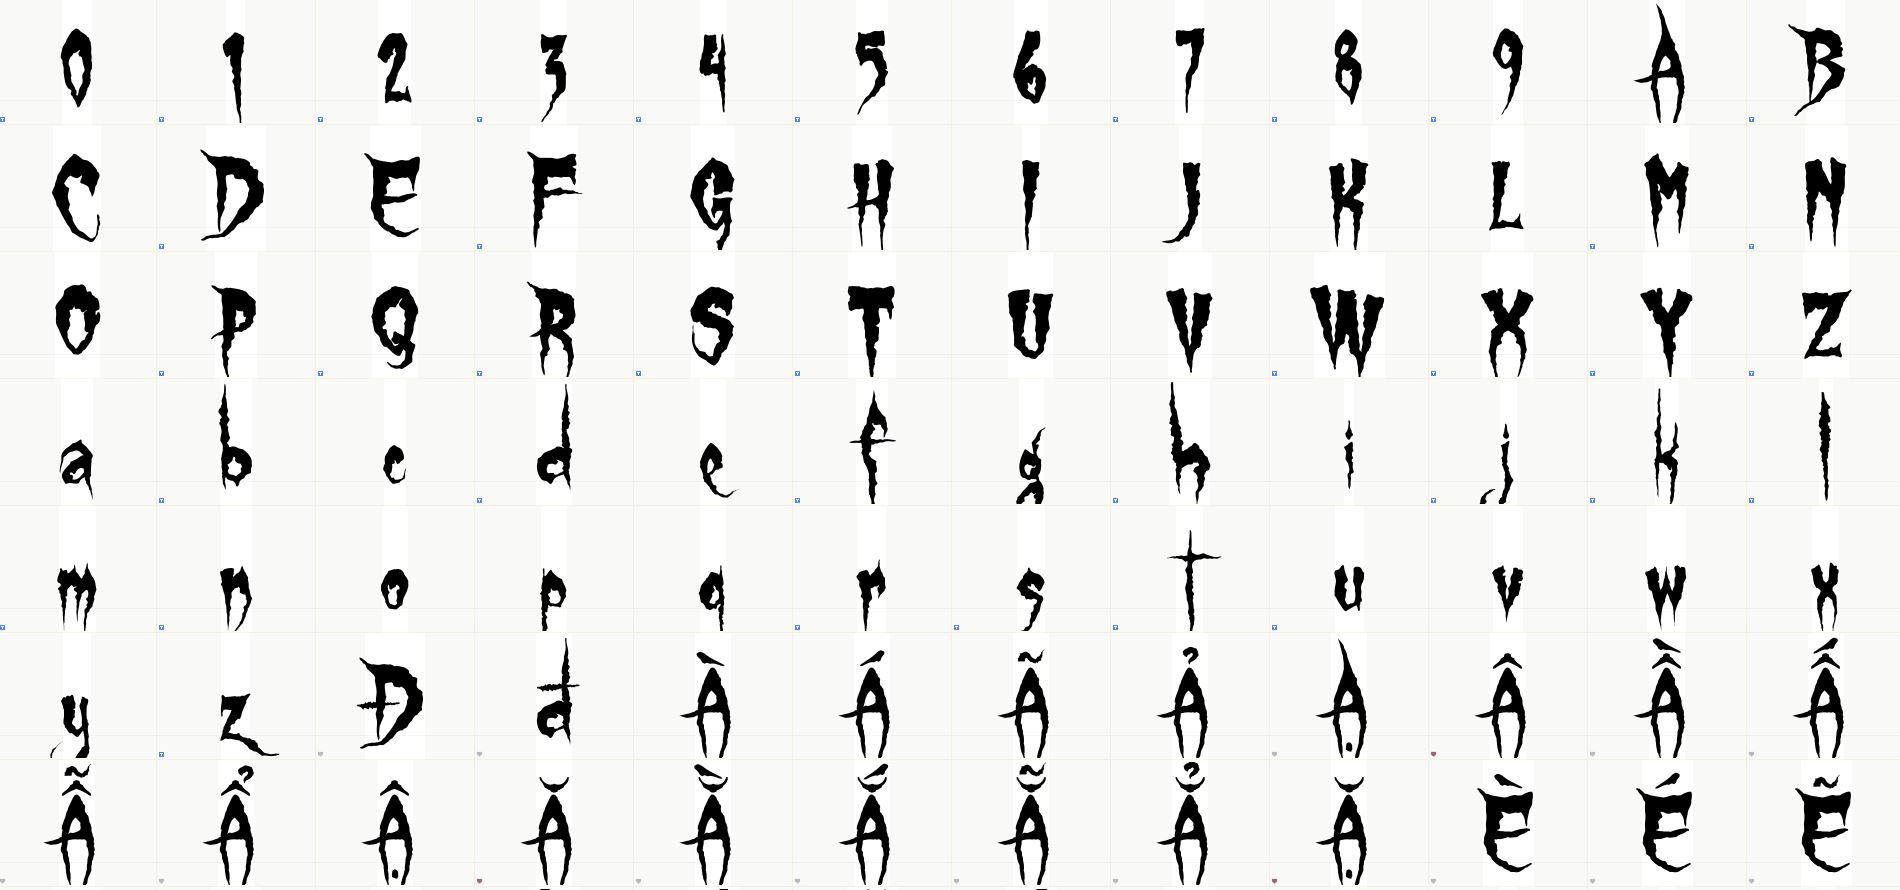 Số và cá ký tự latin đẹp trong font chữ halloween